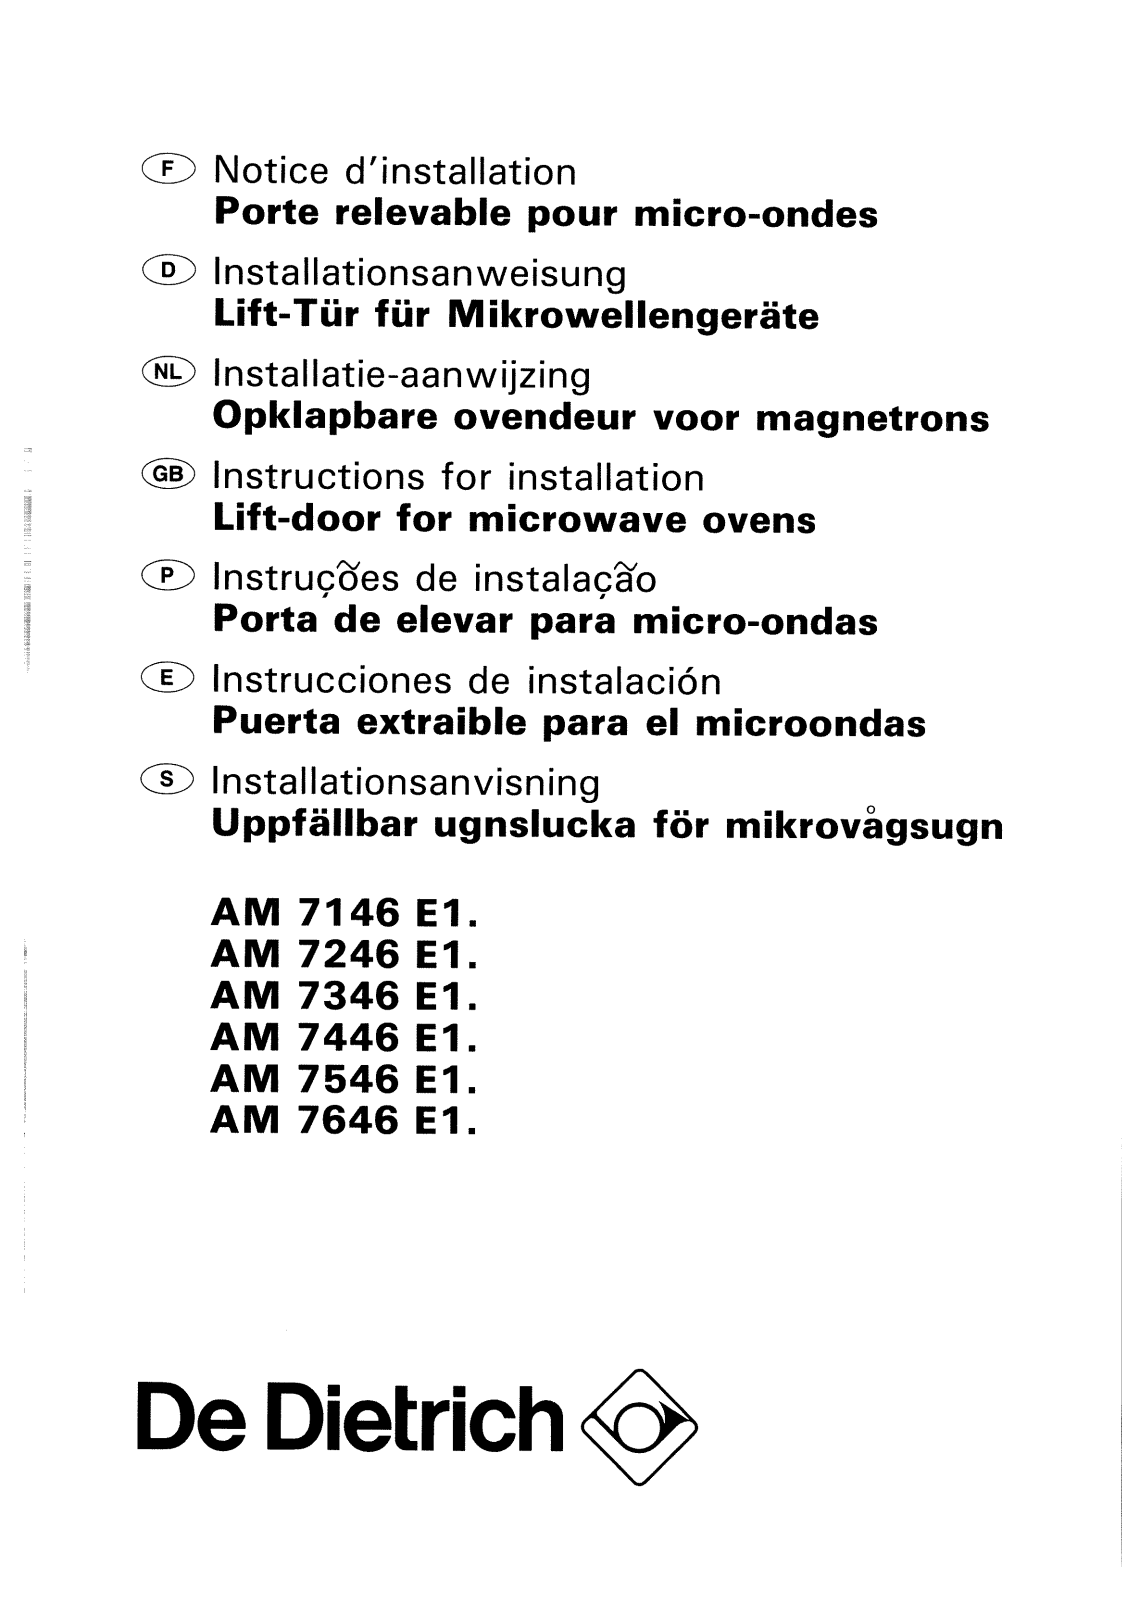 De dietrich AM7646E1, AM7746E1, AM7246E1, AM7246E2, AM7346E1 User Manual